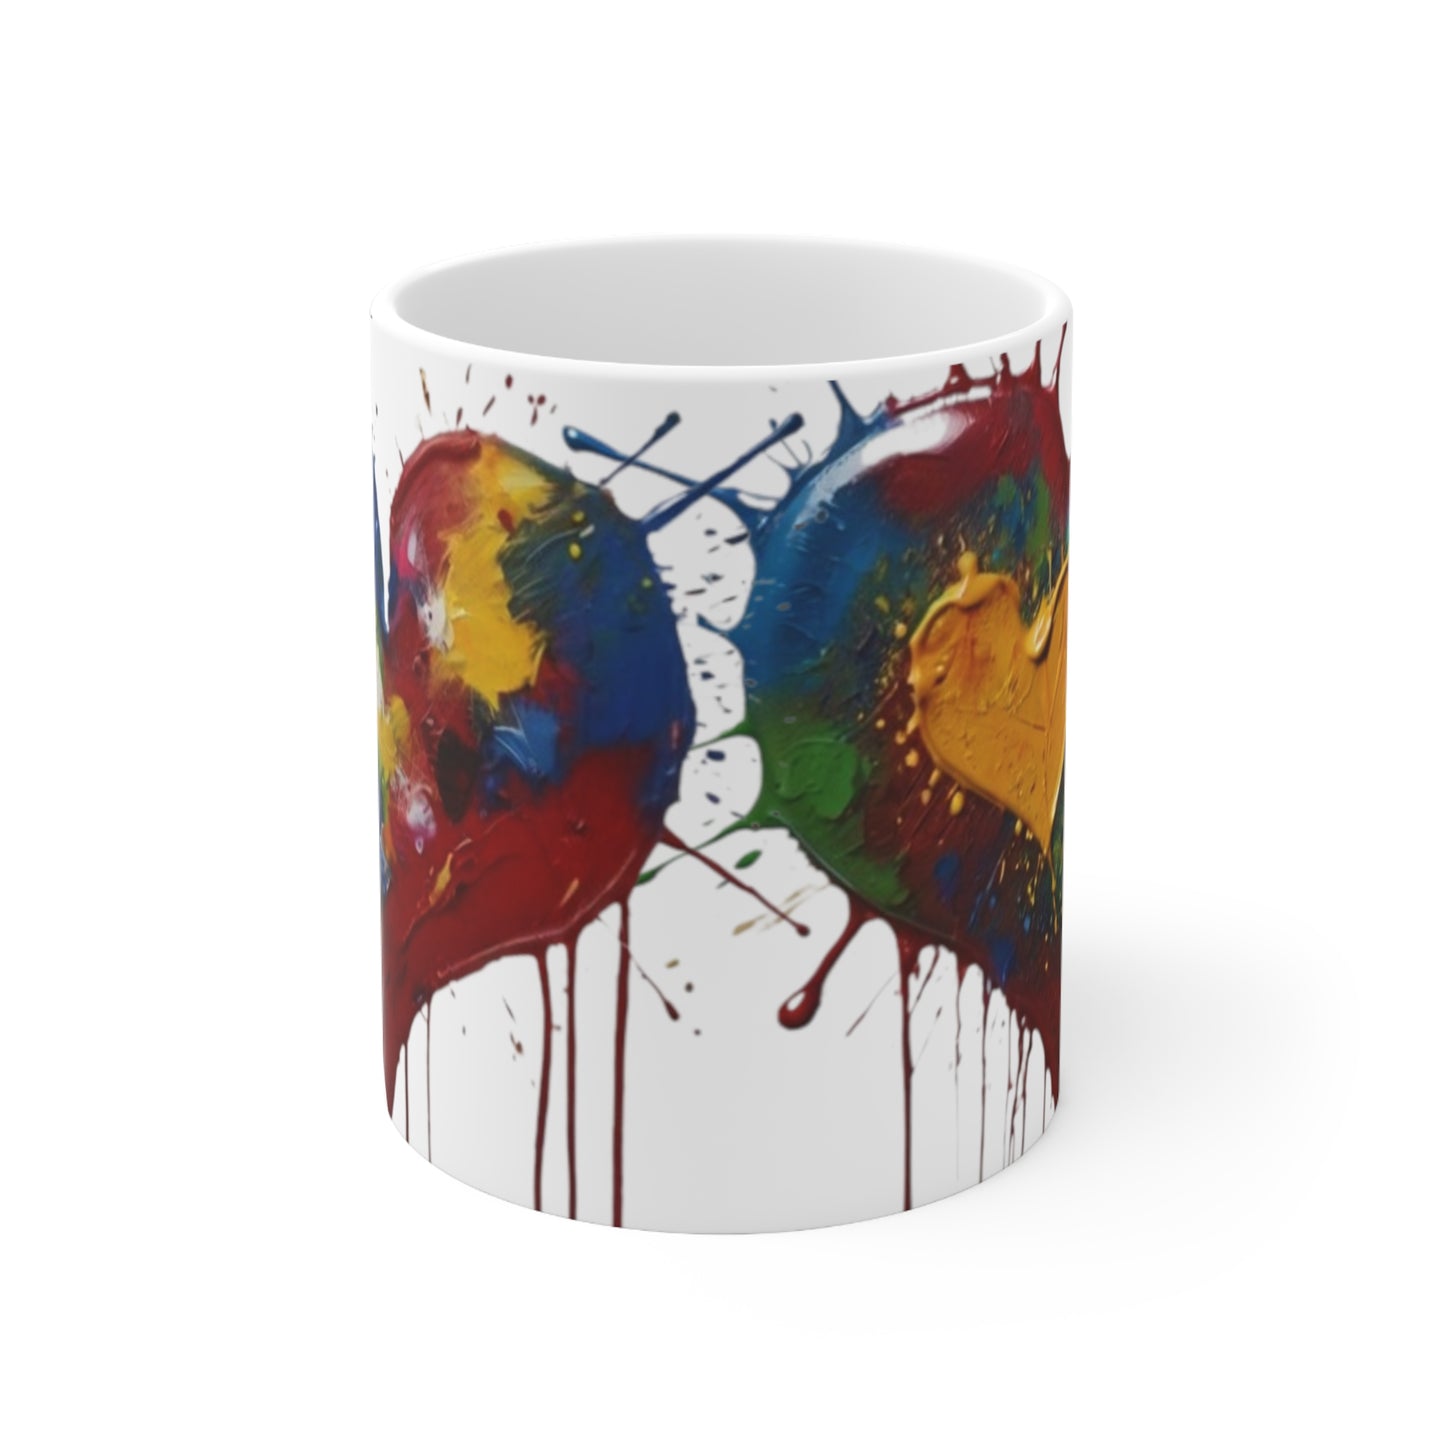 Messy Colourful Multicoloured Love Hearts Mug - Ceramic Coffee Mug 11oz